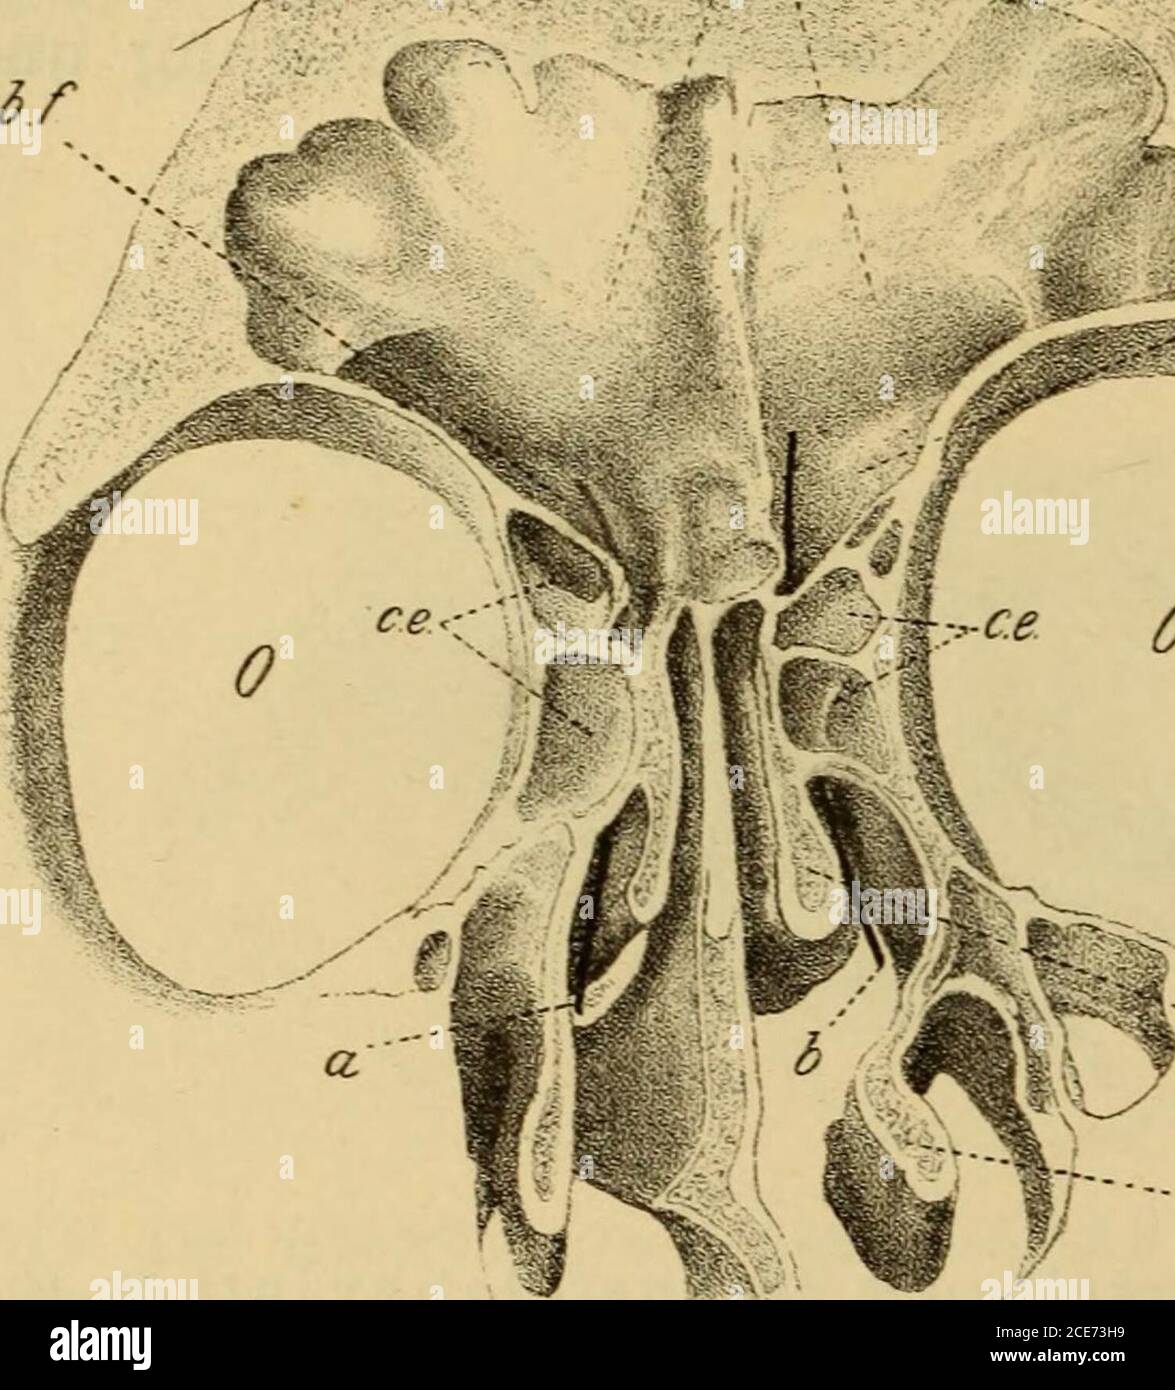 Patologie und Therapie der entzündlichen Erkrankungen der Nebenhöhlen der  Nase . En einzelnen Fällen bildet dieselbe eine solide, dünne  Knochen-platte, welche bald inniger un die vordere Partie des  infundíbulumsich anschliesst, bald